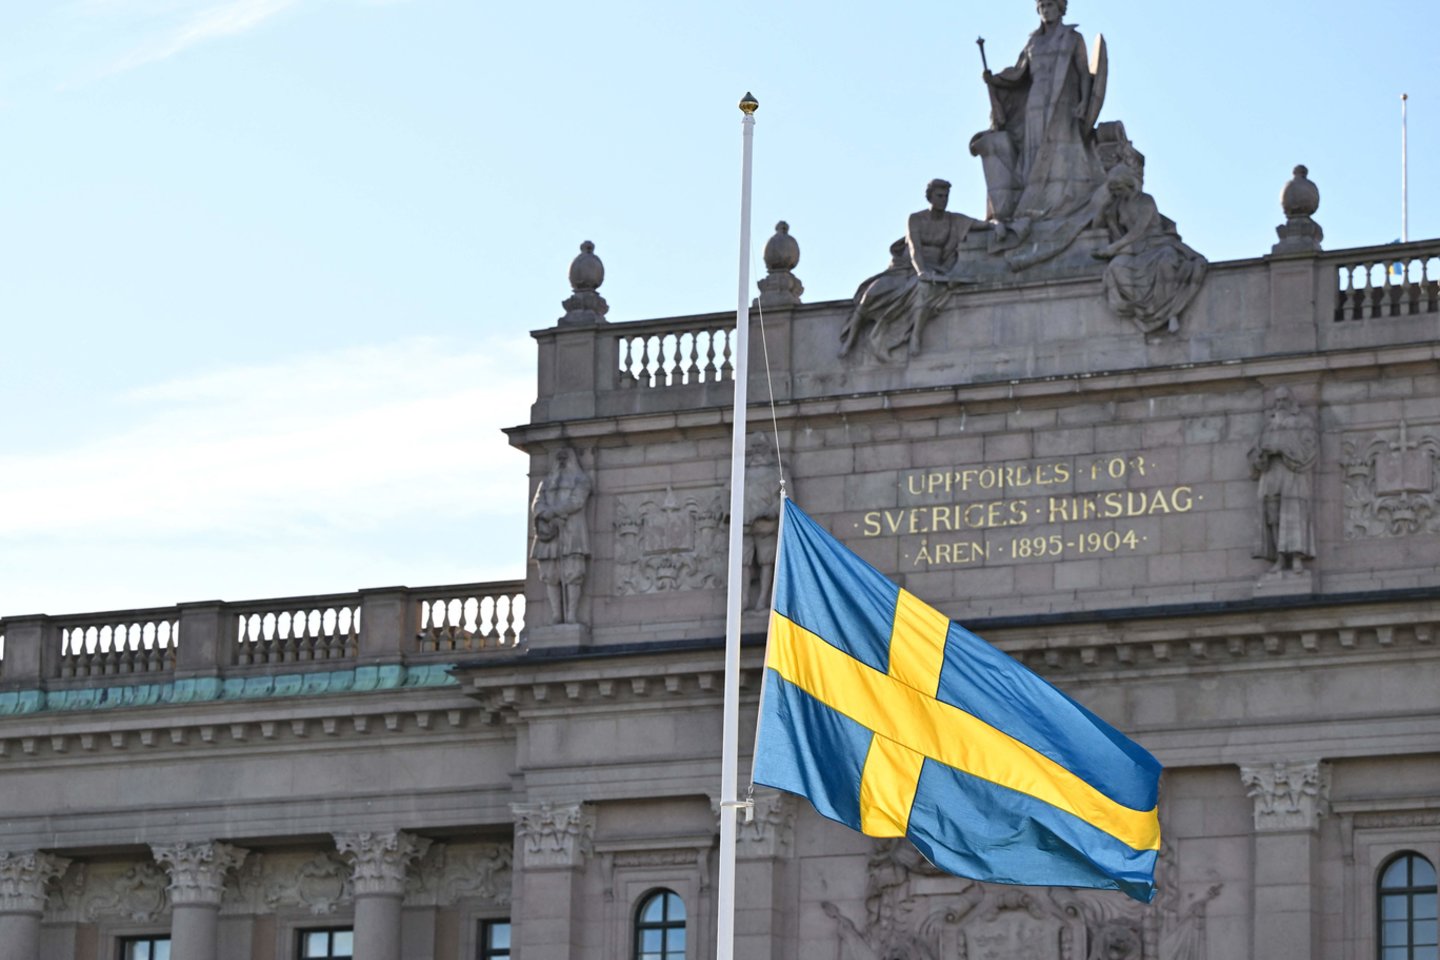 Švedijos parlamento vėliavos nuleistos iki pusės stiebo per teroristinio išpuolio Briuselyje aukų pagerbimo ceremoniją Stokholme, Švedijoje, spalio 17 d. Švedijos žvalgybos agentūra pranešė, kad palieka nepakeistą pavojaus lygį po to, kai Briuselio policija spalio 17 d. nušovė ir mirtinai sužeidė užpuoliką, kaltinamą spalio 16 d. nušovus du švedų futbolo sirgalius.<br>AFP/Scanpix nuotr.